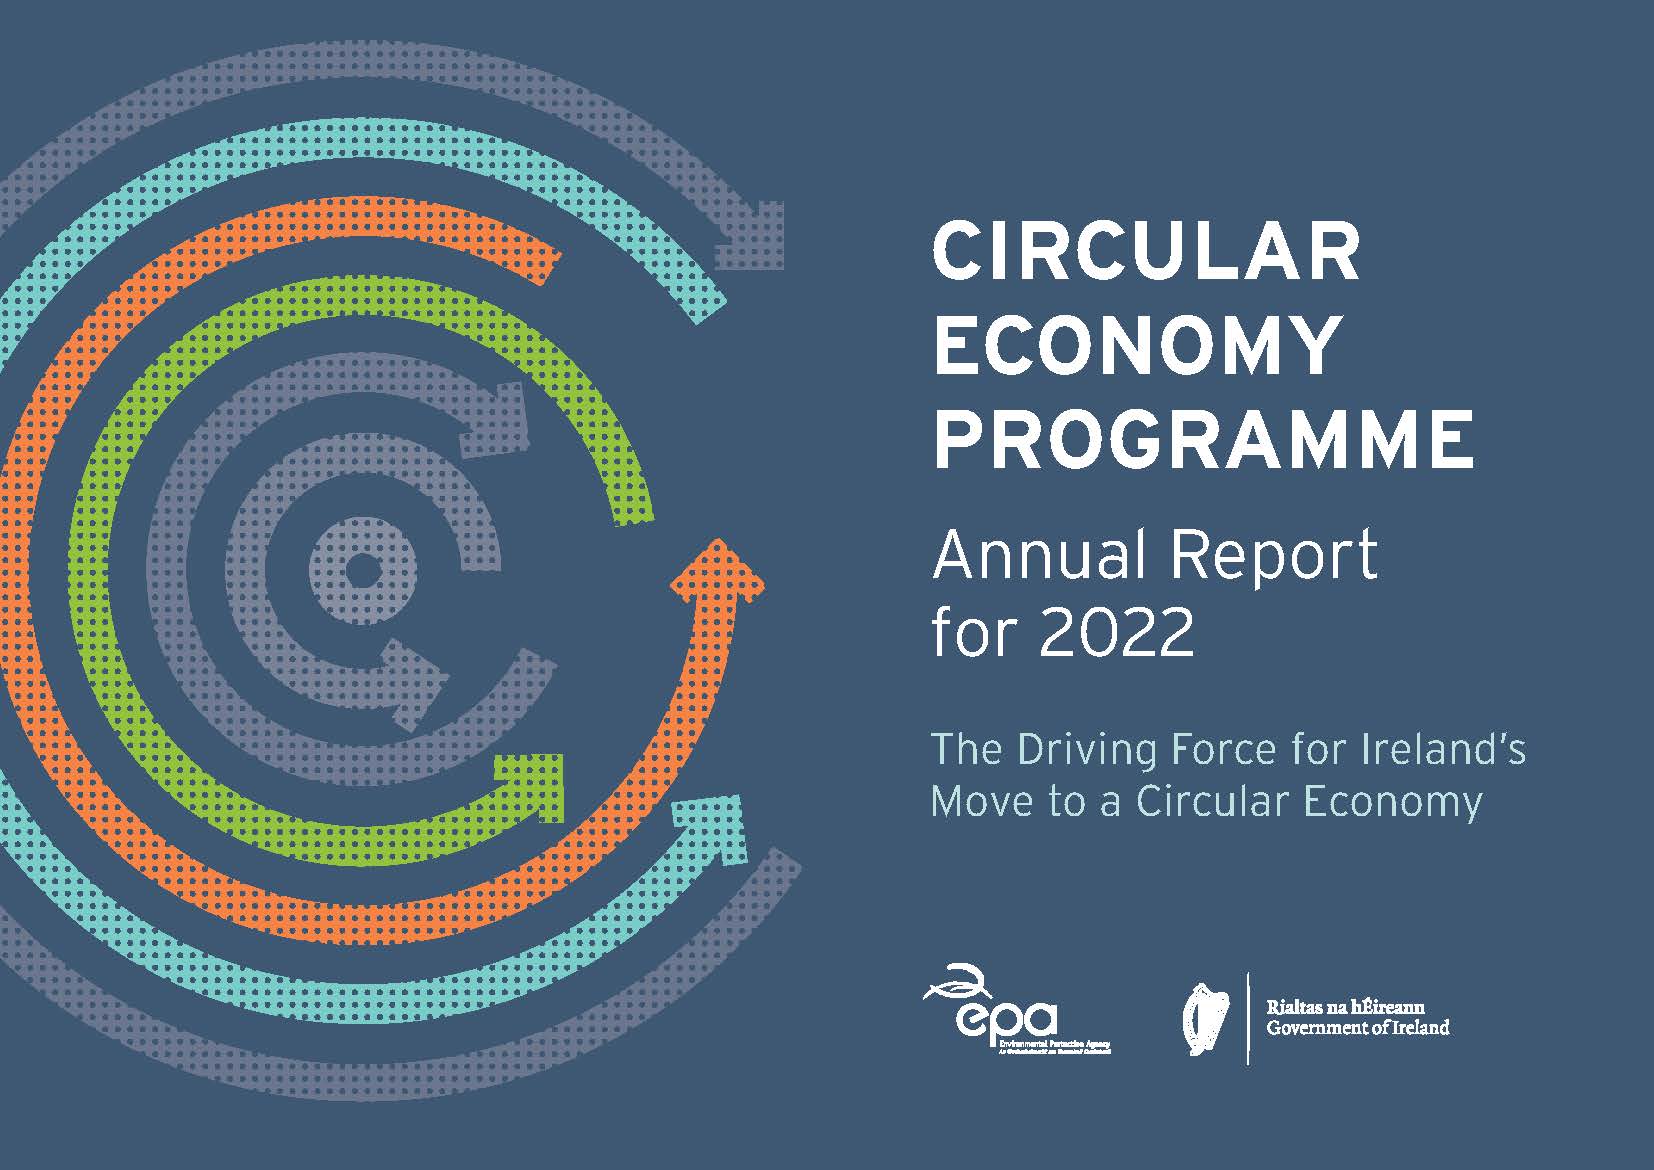 Circular Economy Programme & logo